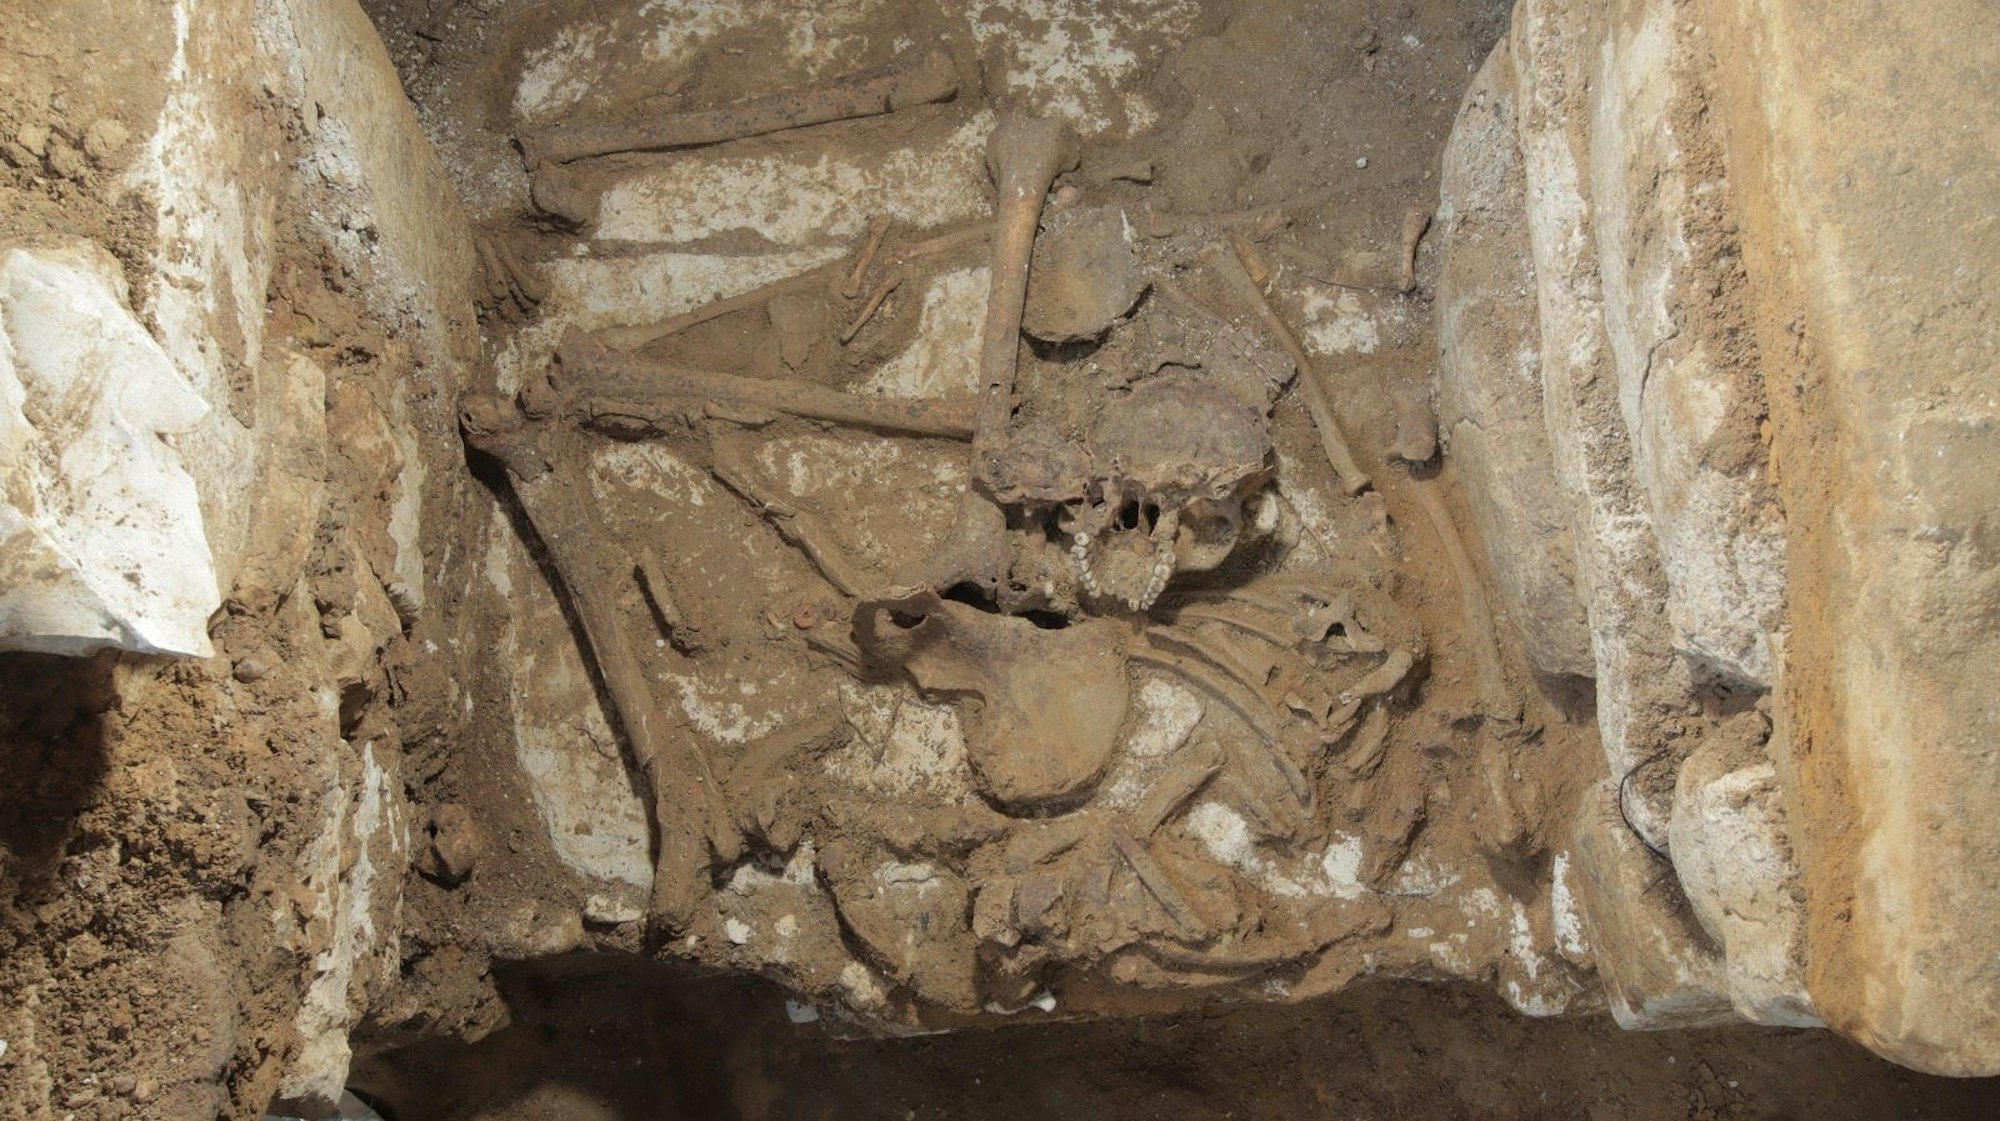 Im mexikanischen Palenque haben Bauarbeiter eine bisher unbekannte Grabkammer der Maya entdeckt. In ihr wurde ein vollständig erhaltenes menschliches Skelett gefunden.